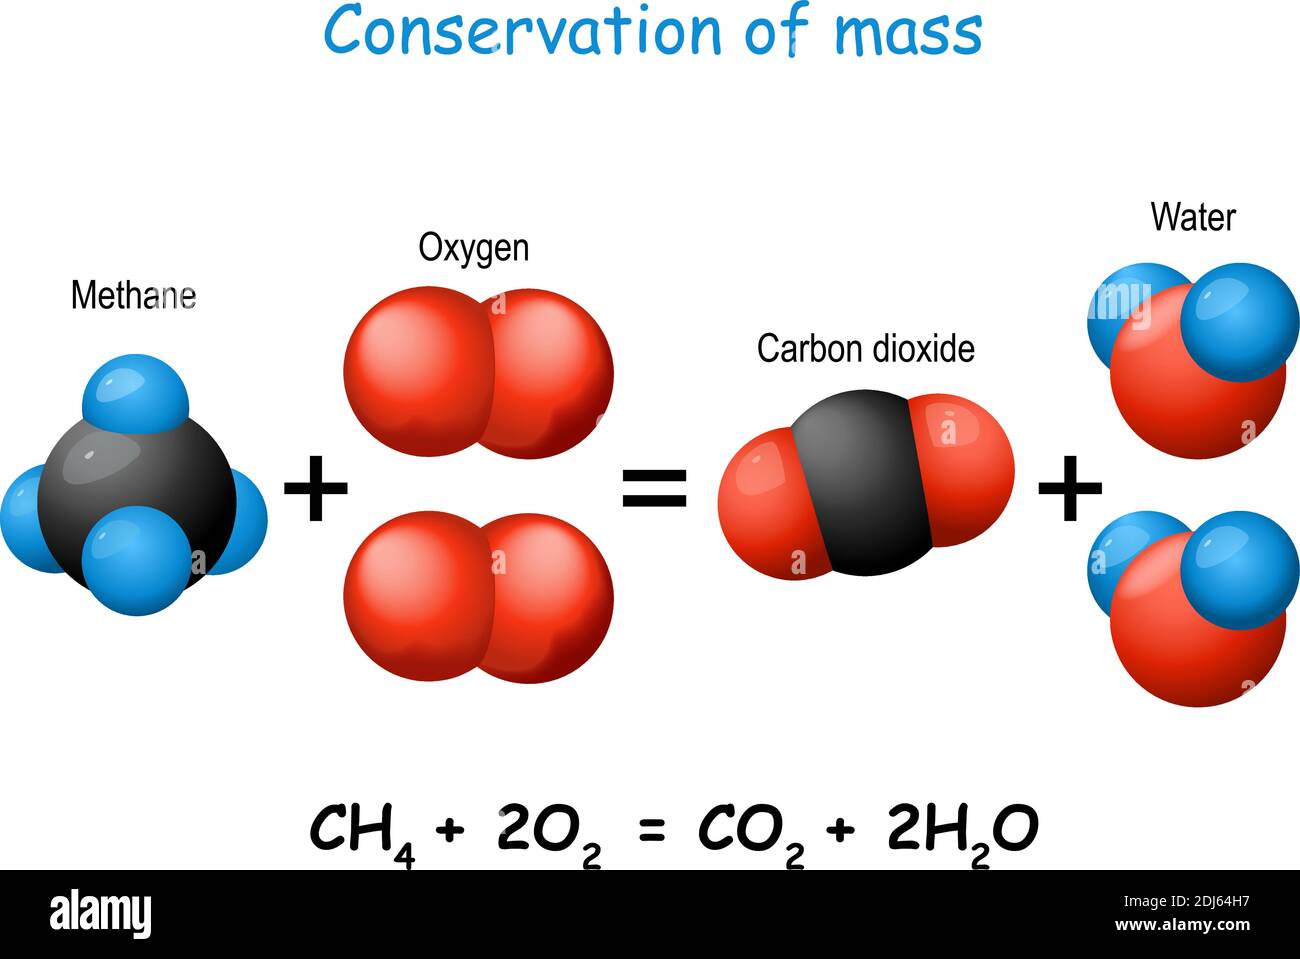 Gesetz zur Erhaltung der Masse. Wissenschaftliches Experiment mit Molekülen von Methan, Kohlendioxid, Sauerstoff und Wasser. Chemische Veränderung. Vektordiagramm Stock Vektor